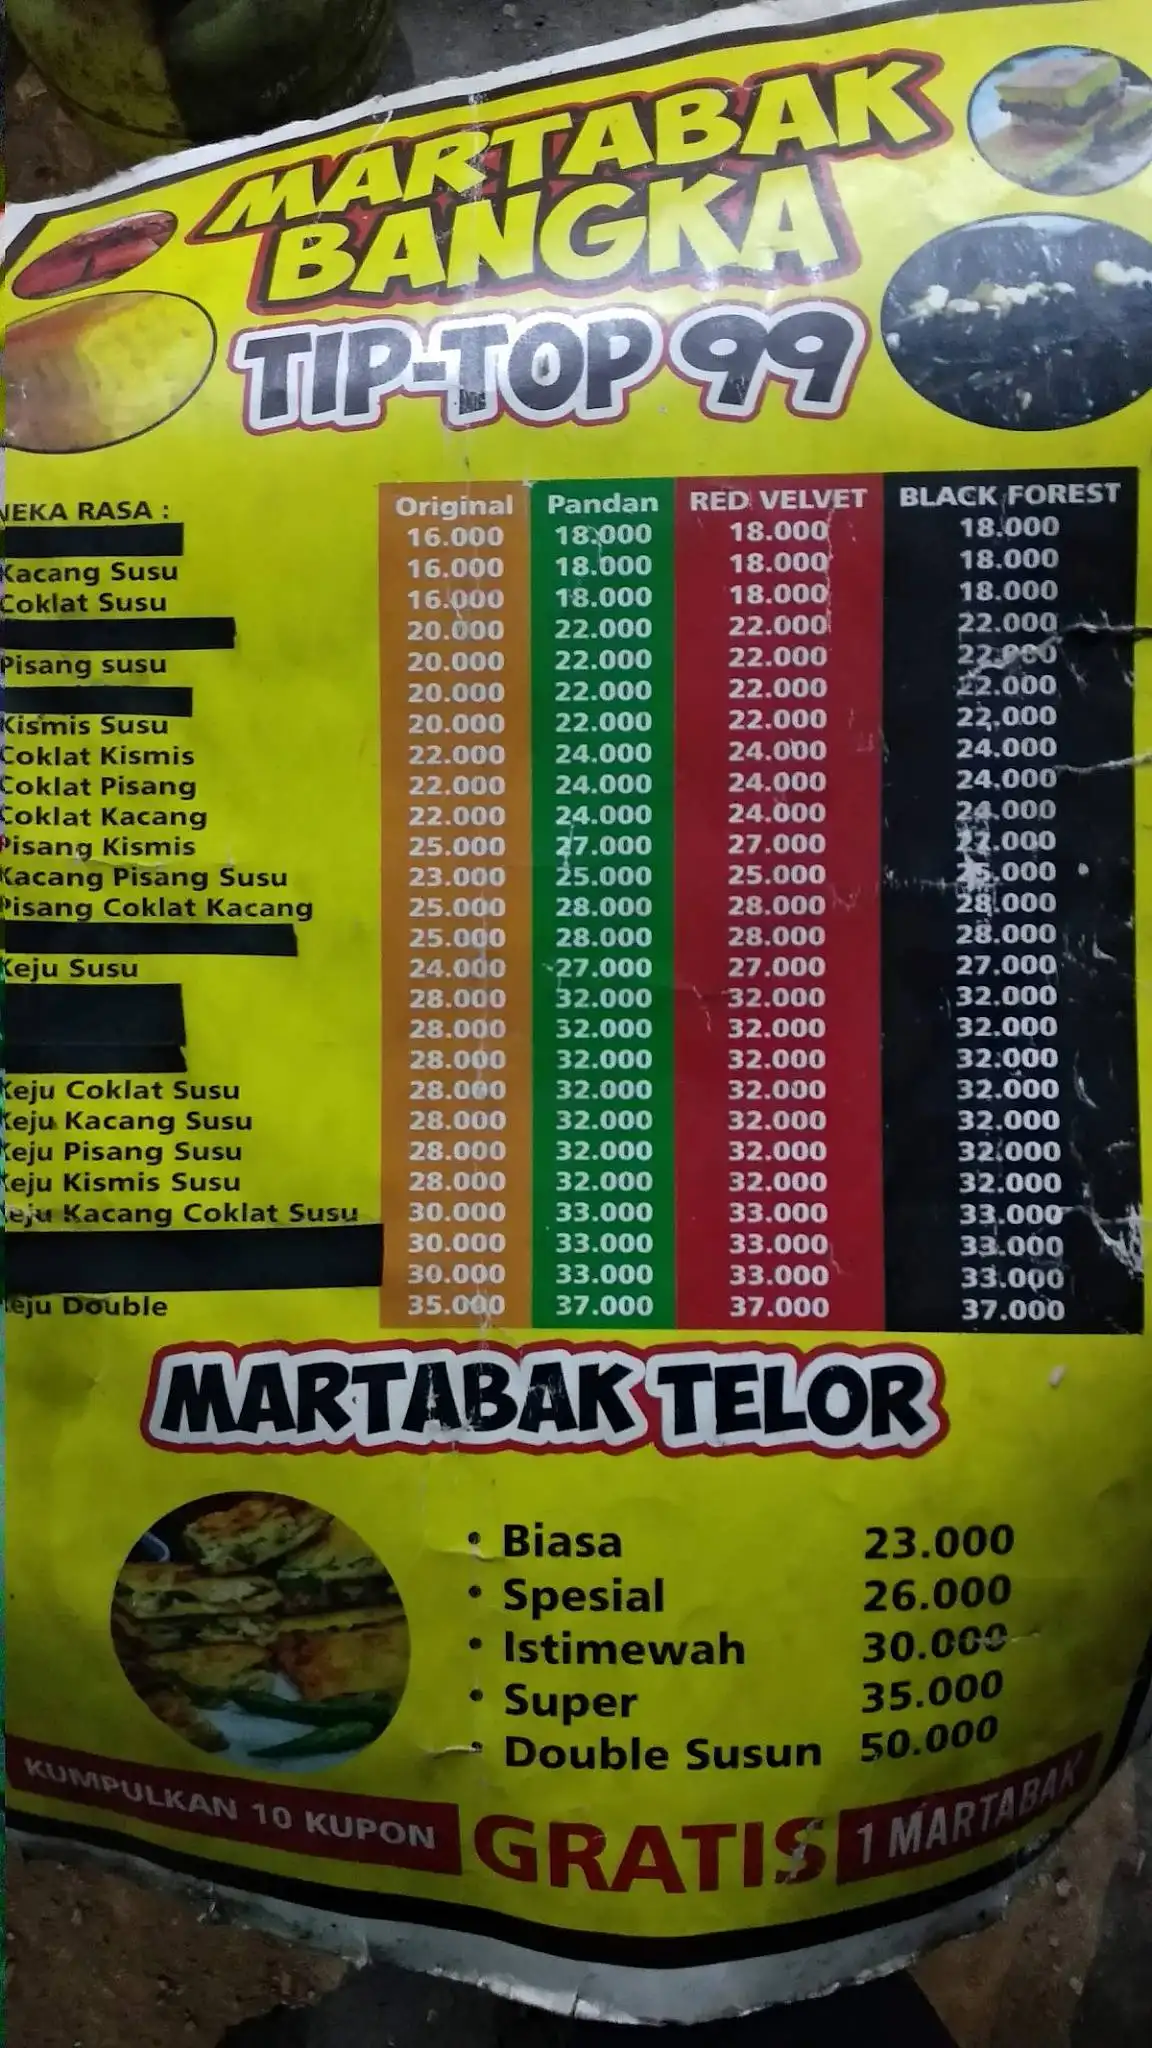 Martabak Bangka Tip Top 99